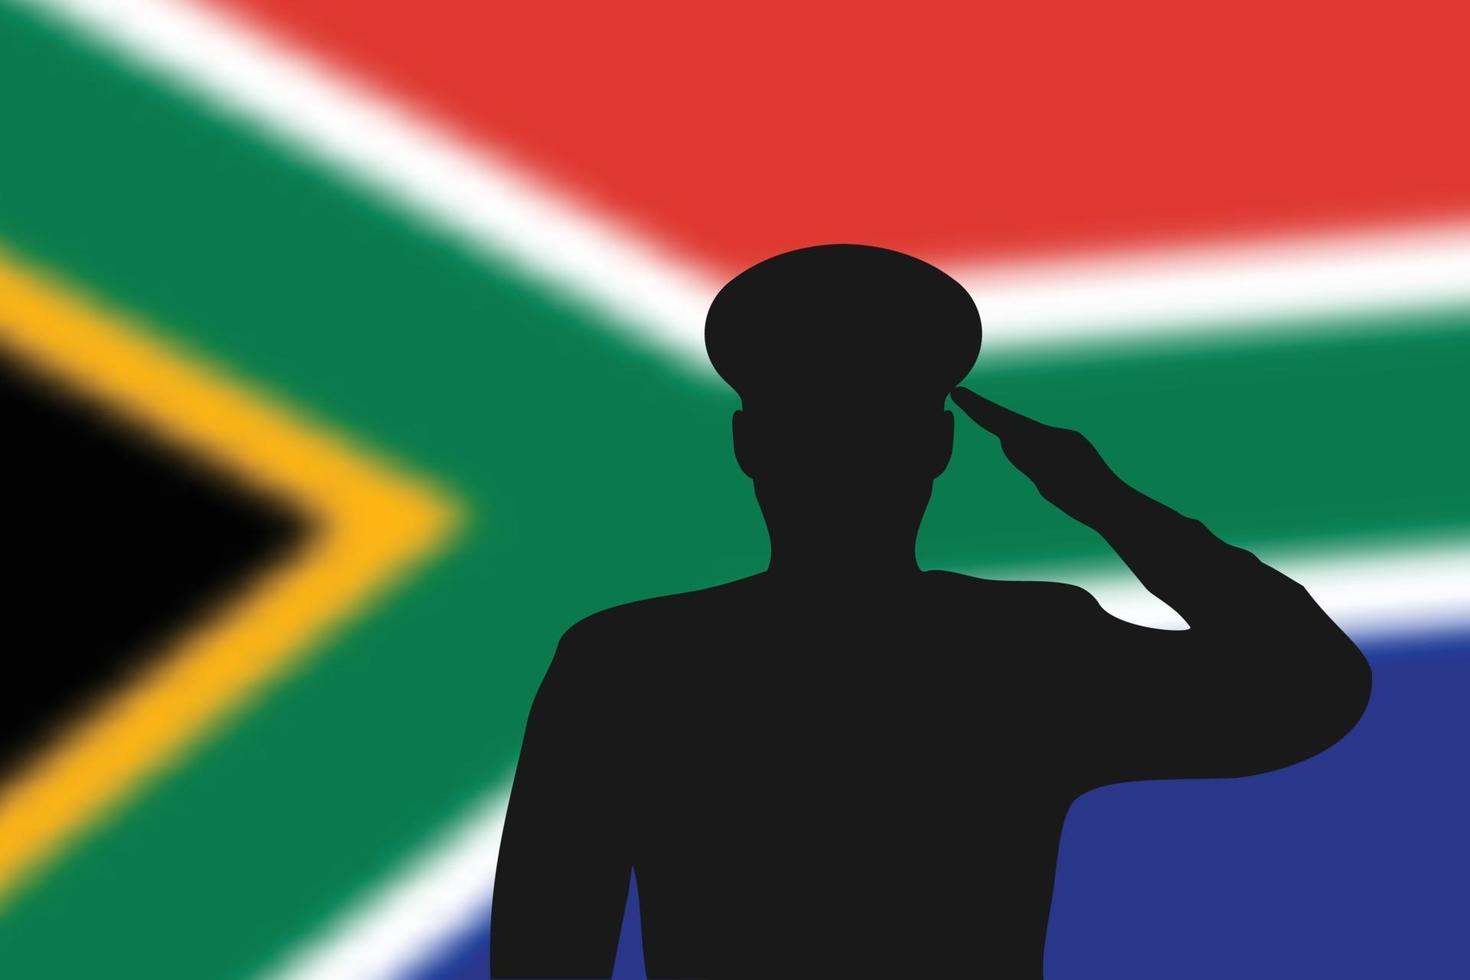 Lötsilhouette auf unscharfem Hintergrund mit südafrikanischer Flagge. vektor